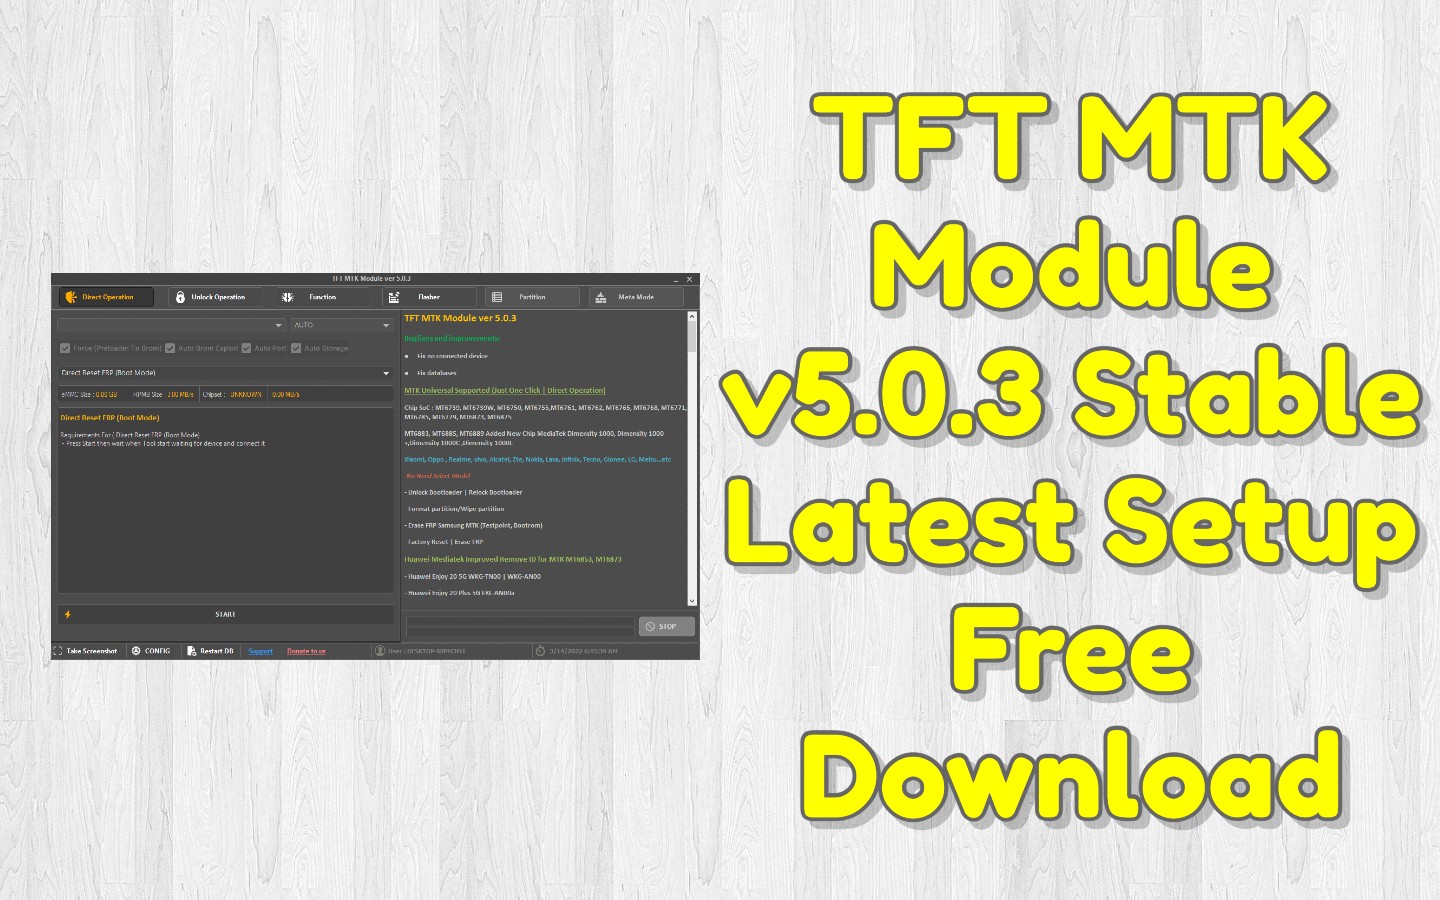 TFT MTK Module v5.0.3 Latest Setup Free Download